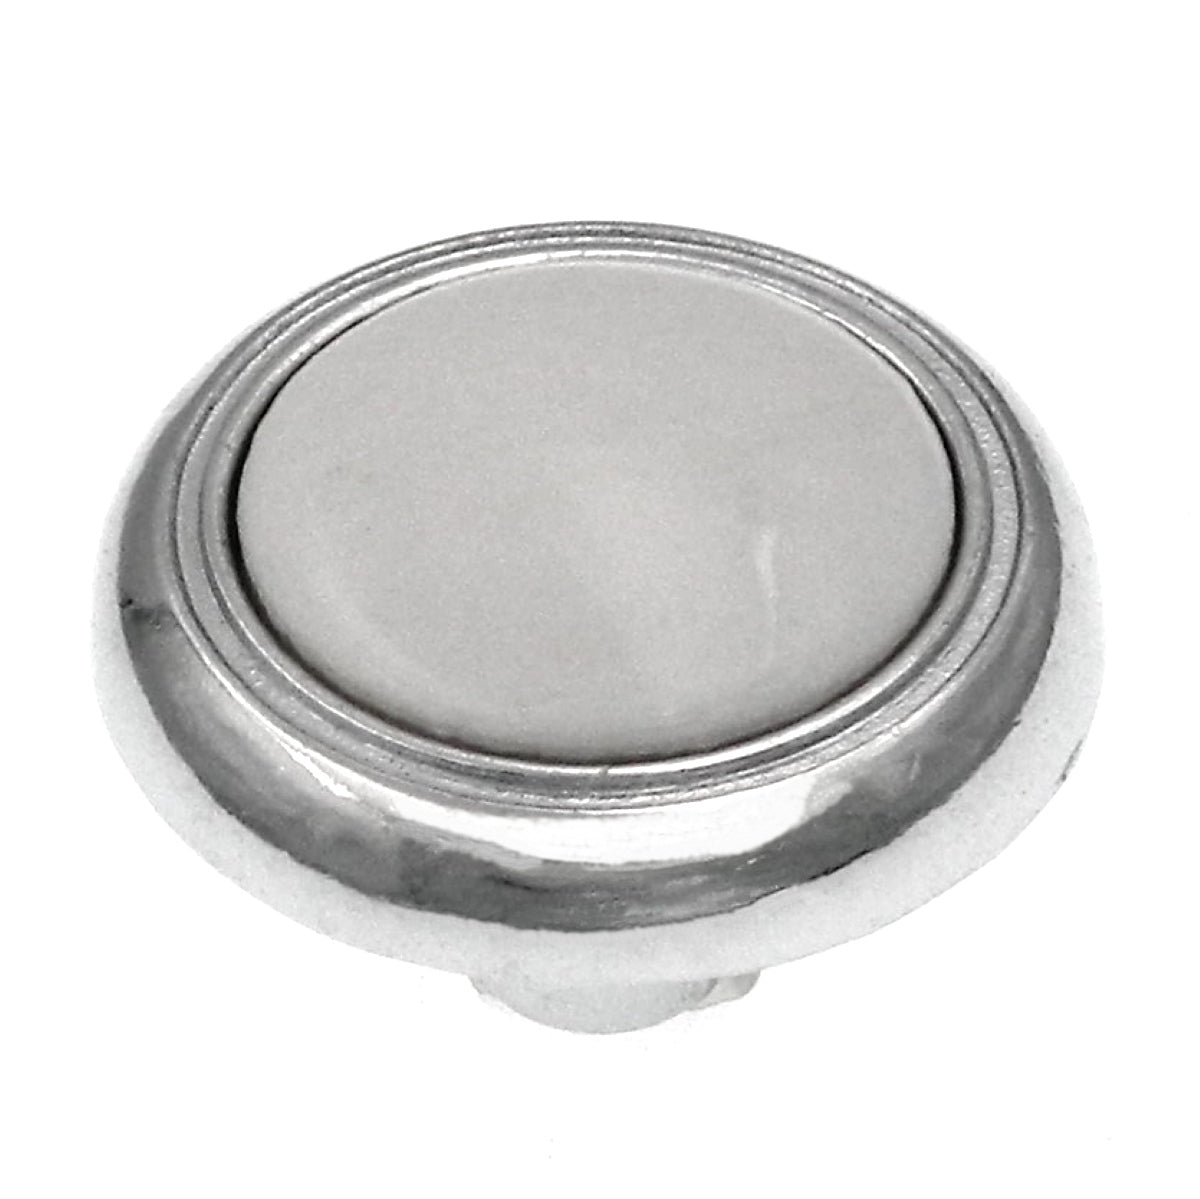 Hickory Hardware Eclipse Perilla redonda para gabinete de porcelana cromada y blanca de 1 1/4" P710-CH